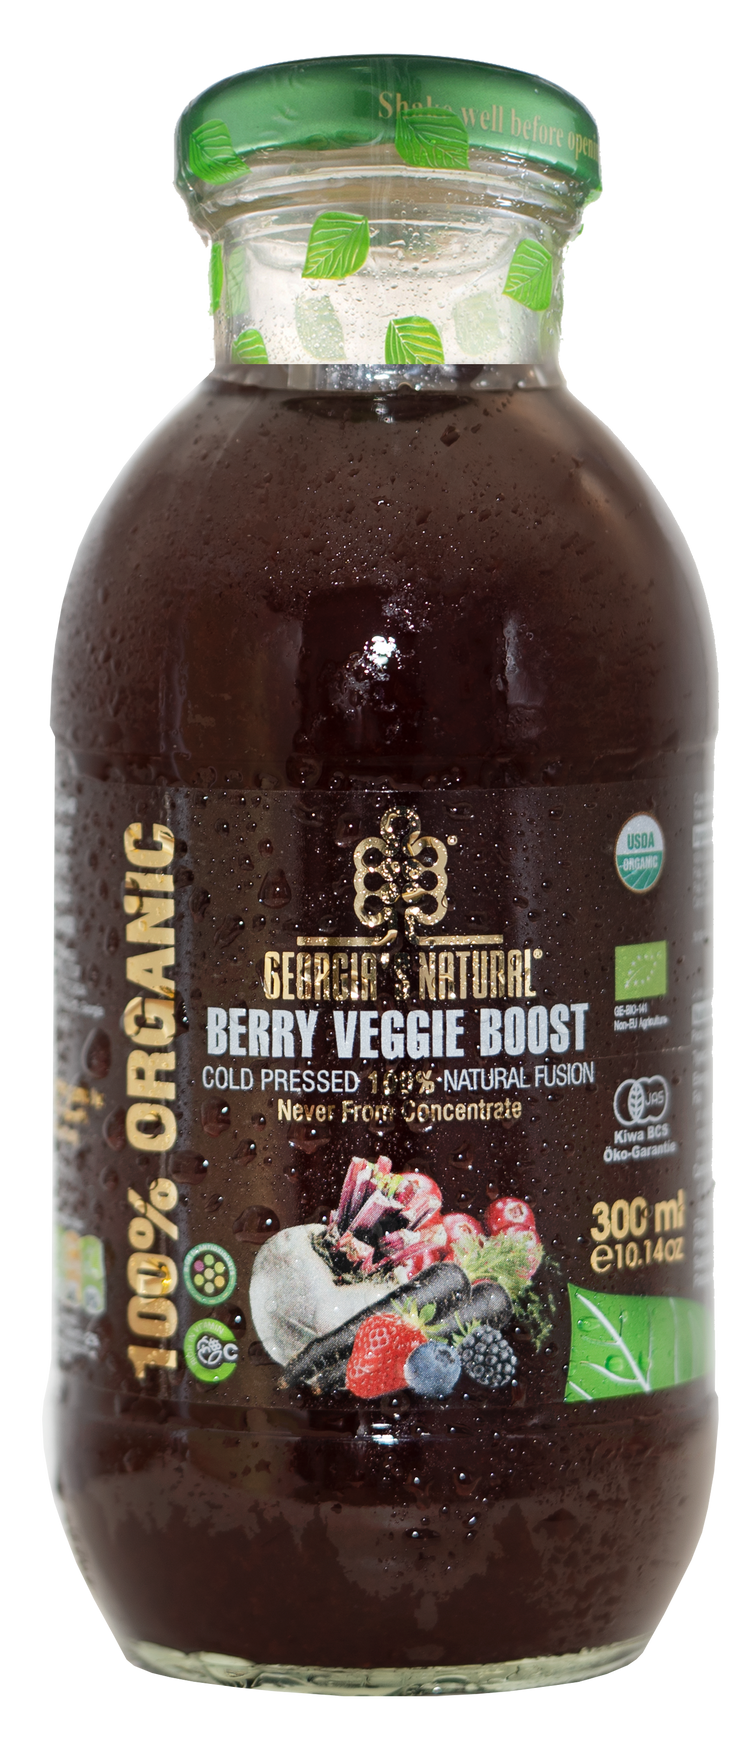 Georgia's Natural Organic Berry Veggie Boost 300ml